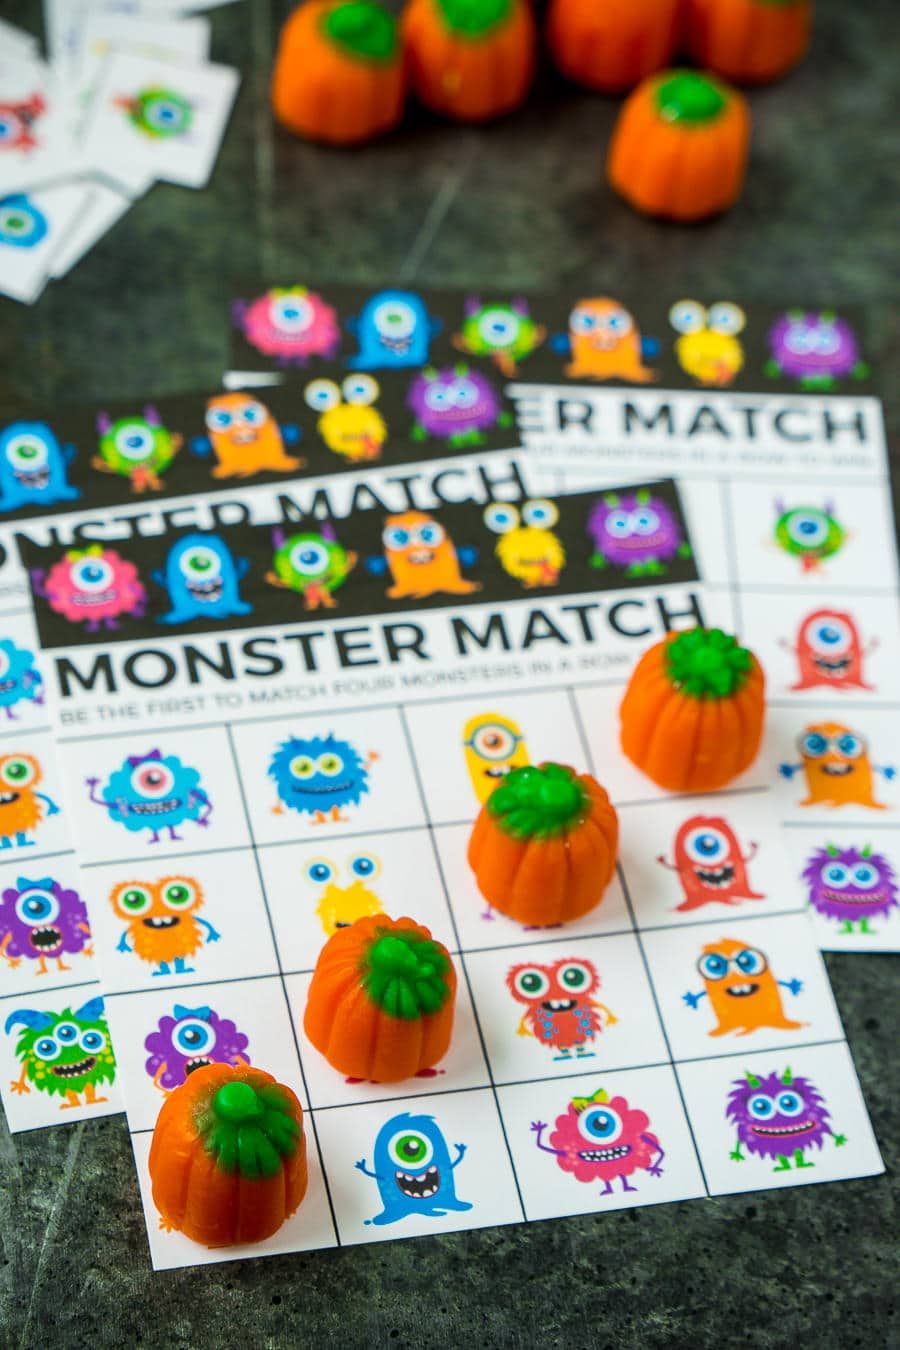 Carduri de bingo de Halloween inspirate de Monster Mash